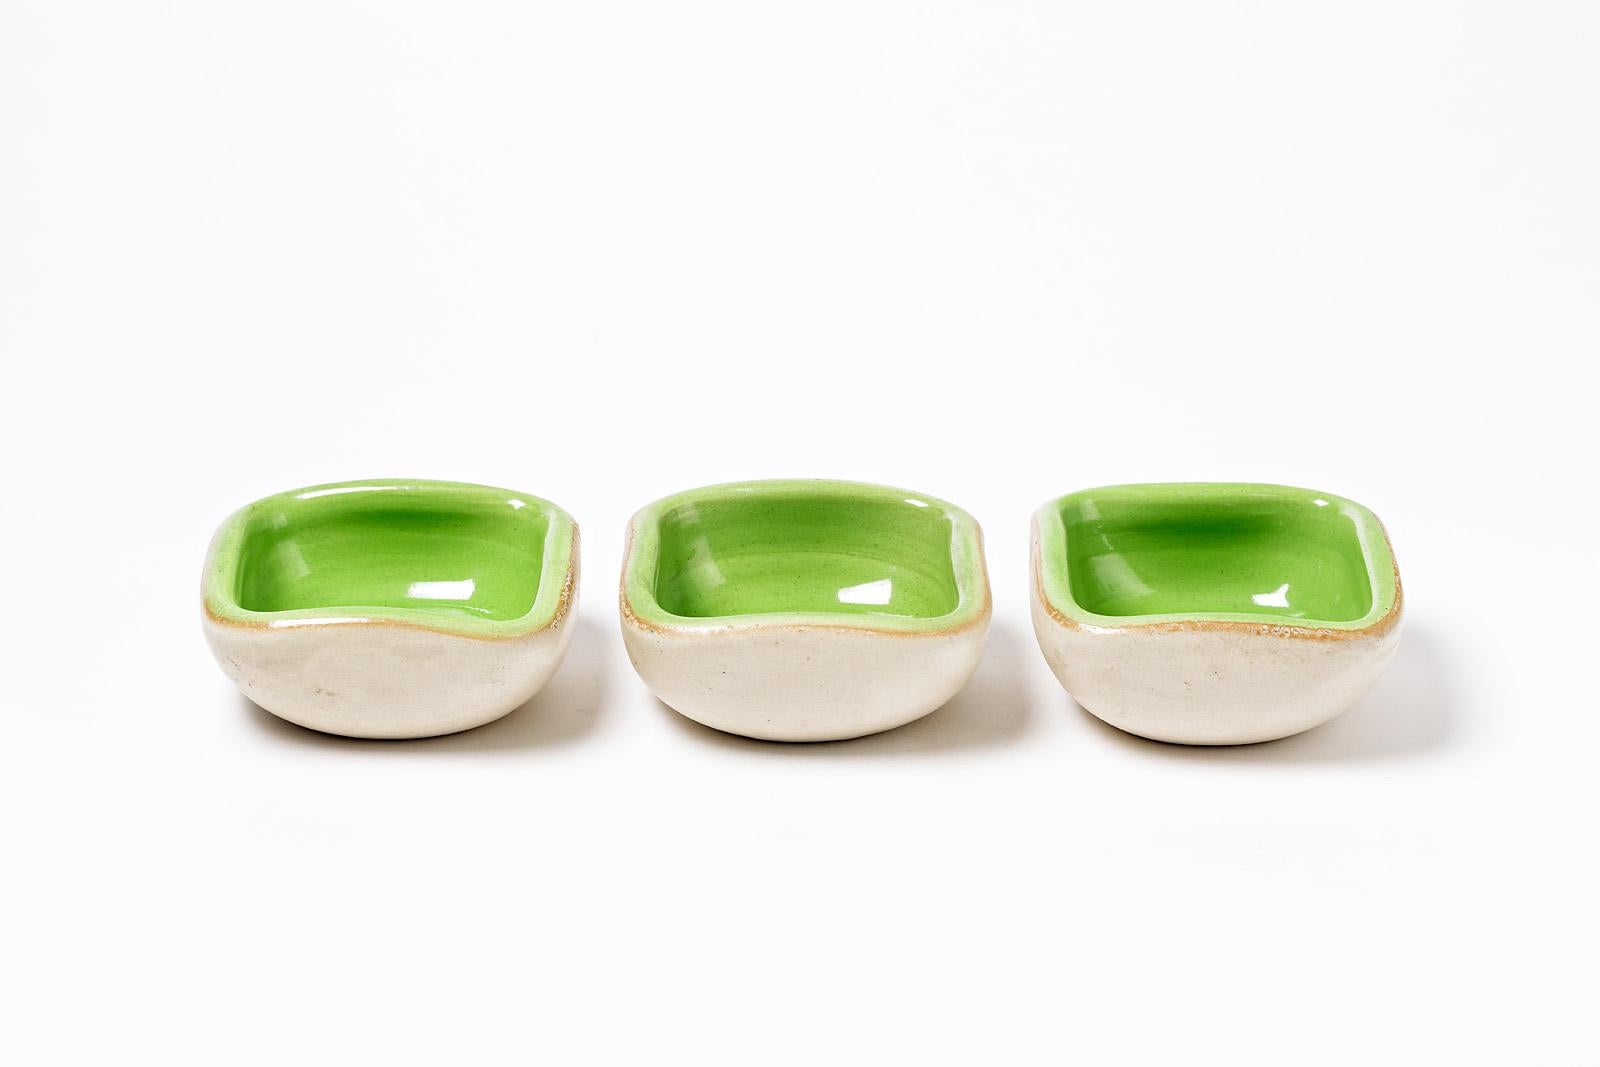 Keramos

Ensemble de trois plats en céramique de formes libres par Keramos, vers 1960.

Des formes élégantes et des couleurs blanches et vertes.

Bon état d'origine.

Dimensions : 5 x 13 x 13cm.